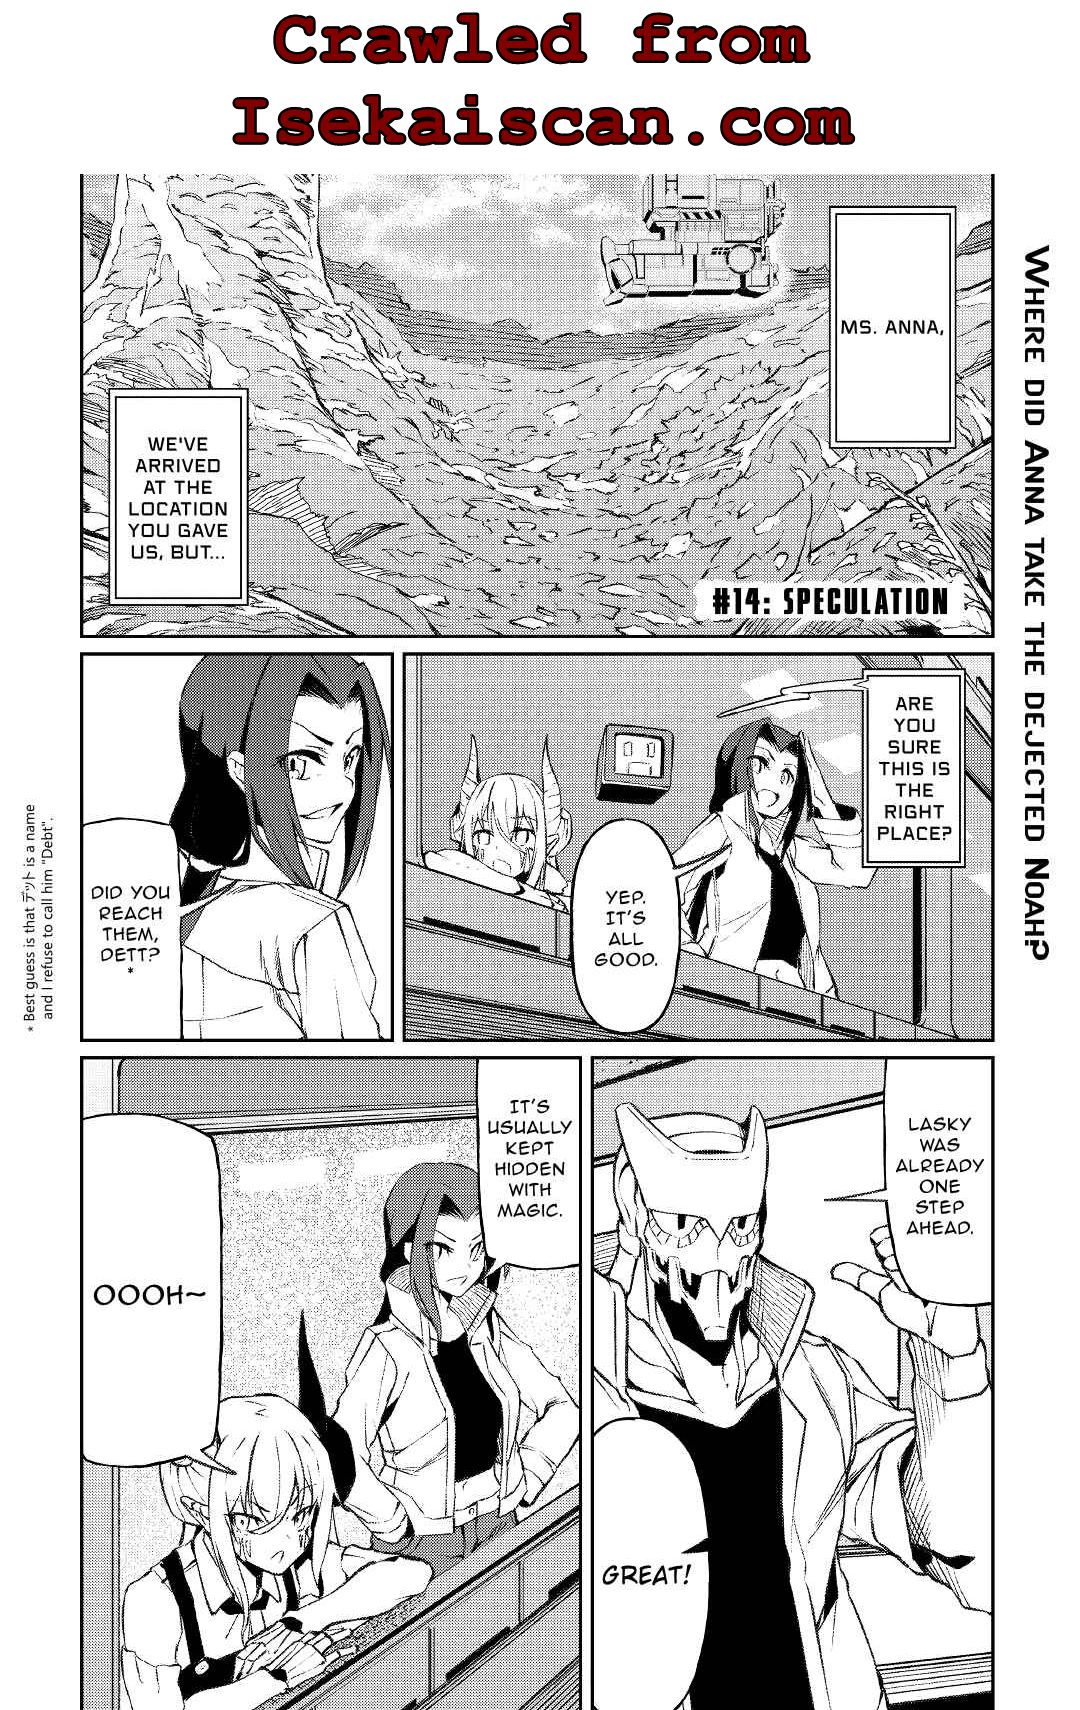 Isekai Tensei - Page 1